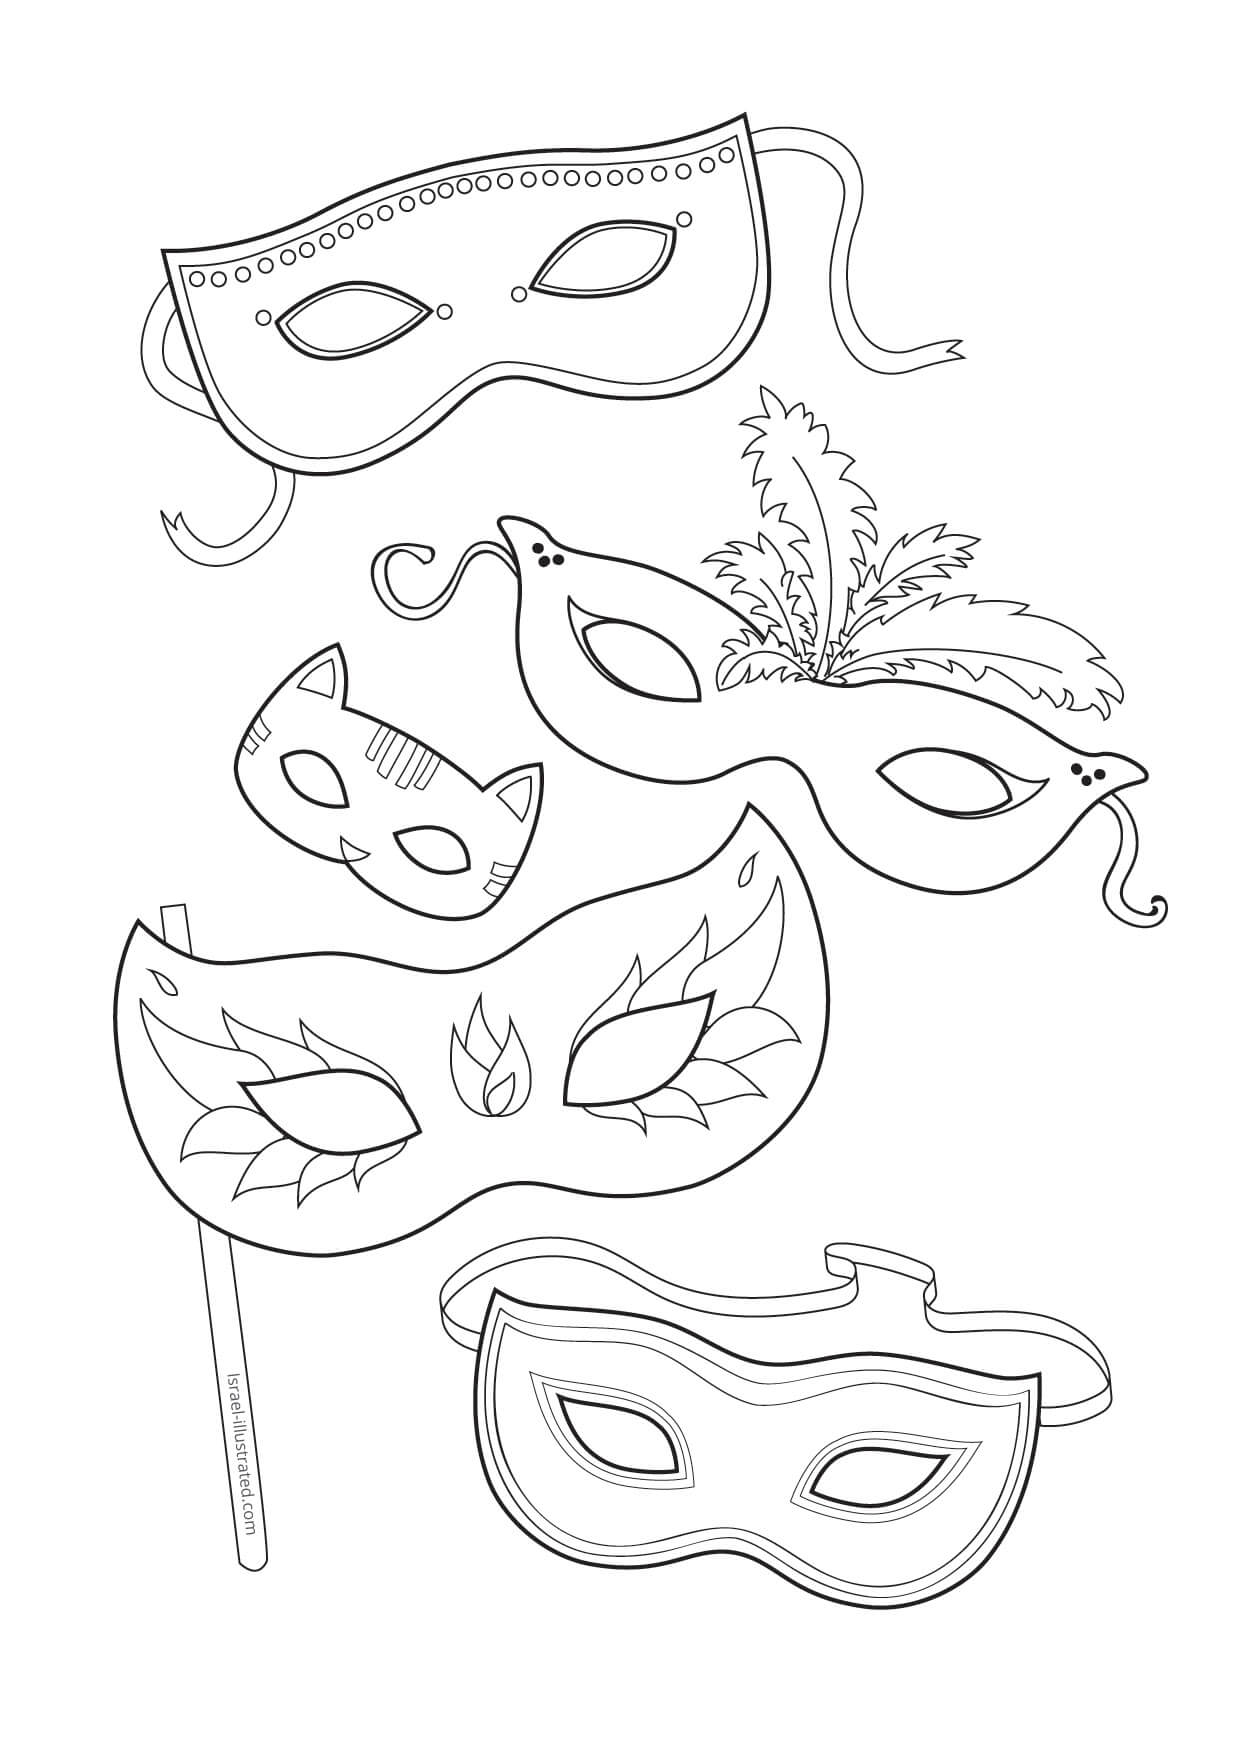 Five Masks